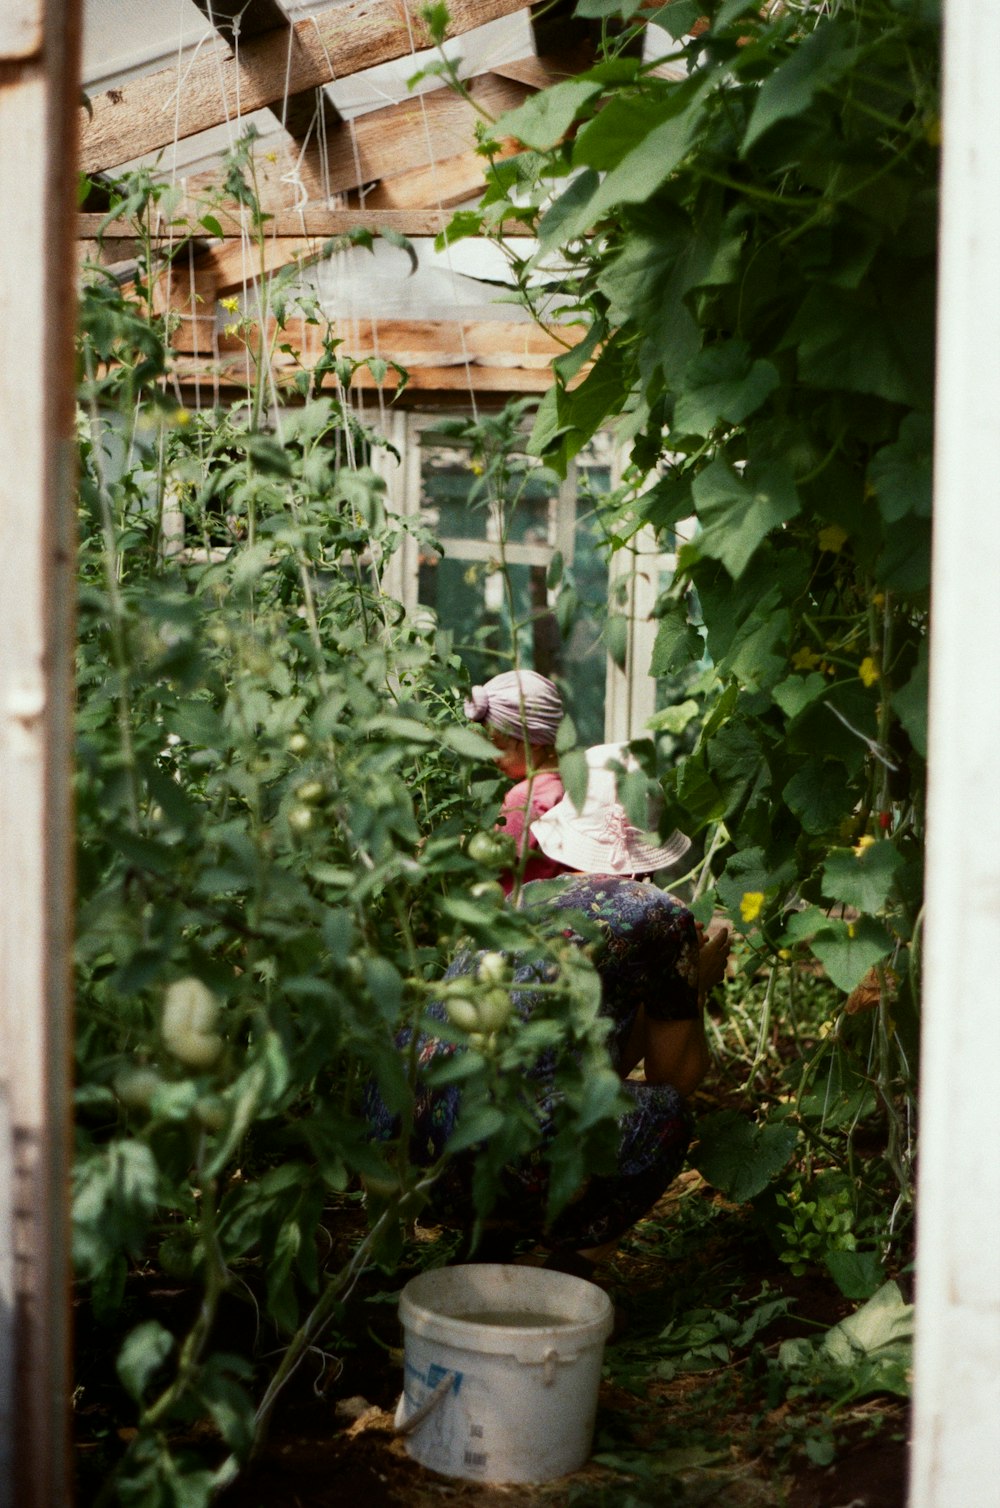 Una mujer arrodillada en un jardín con muchas plantas